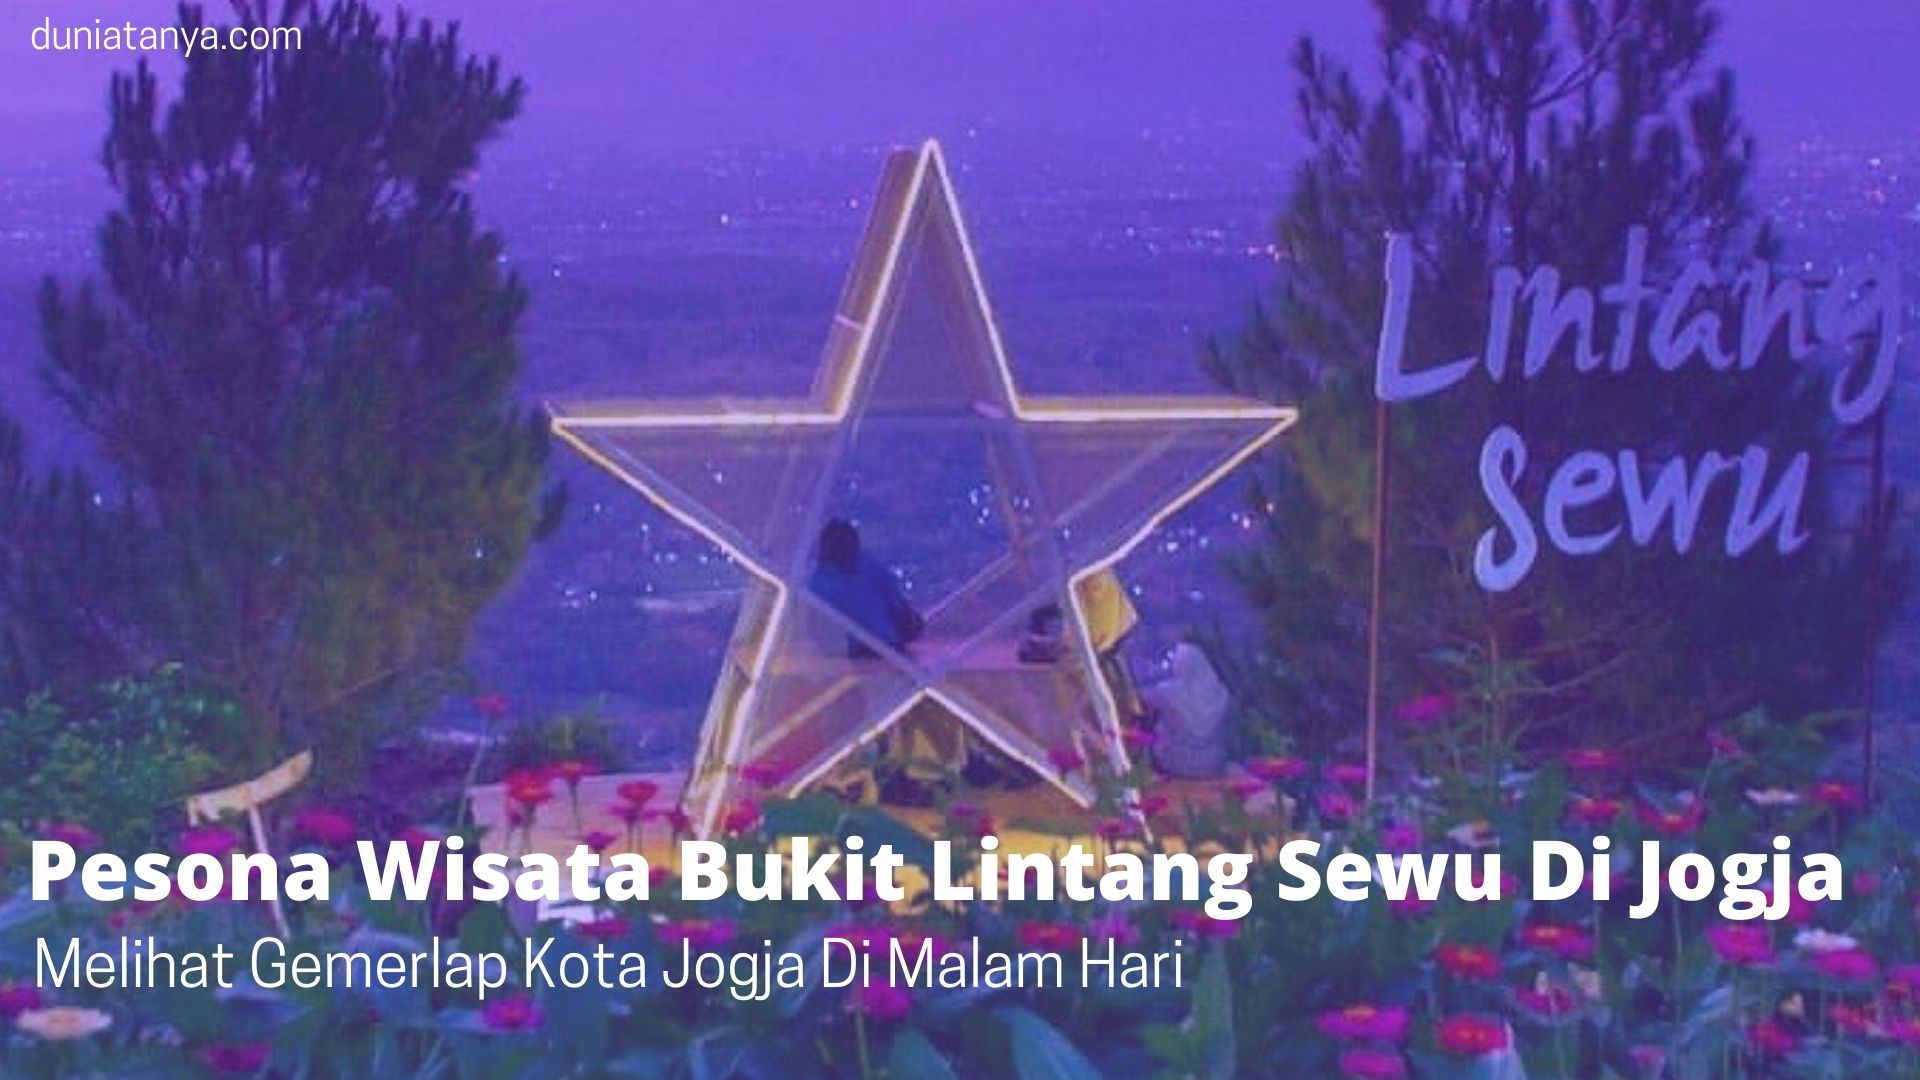 You are currently viewing Pesona Wisata Bukit Lintang Sewu Di Jogja,Melihat Gemerlap Kota Jogja Di Malam Hari